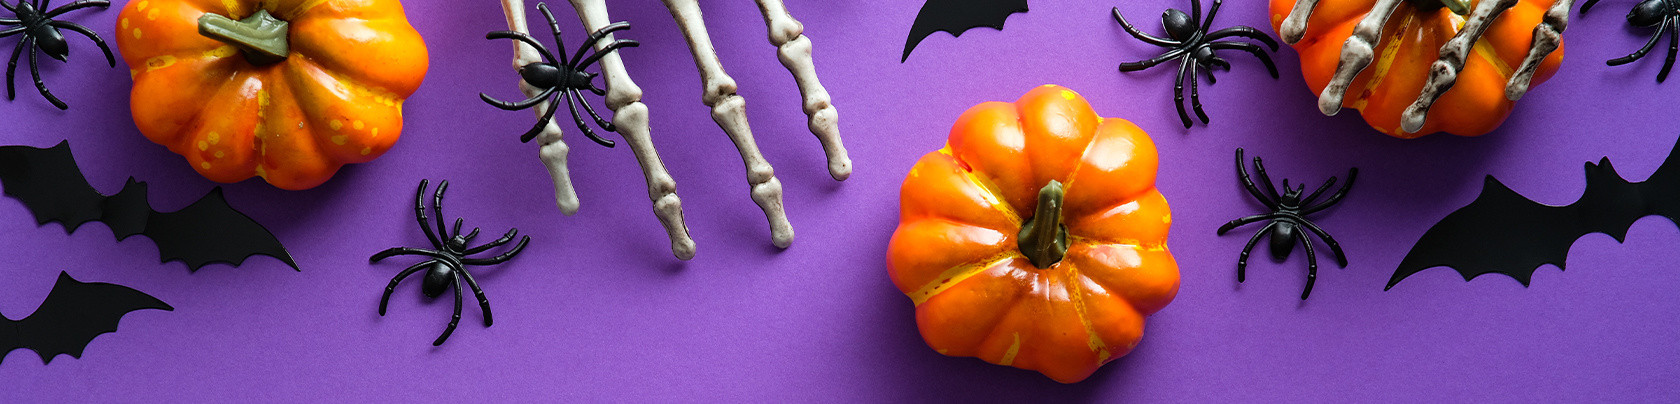 Le origini e le tradizioni della festa di Halloween